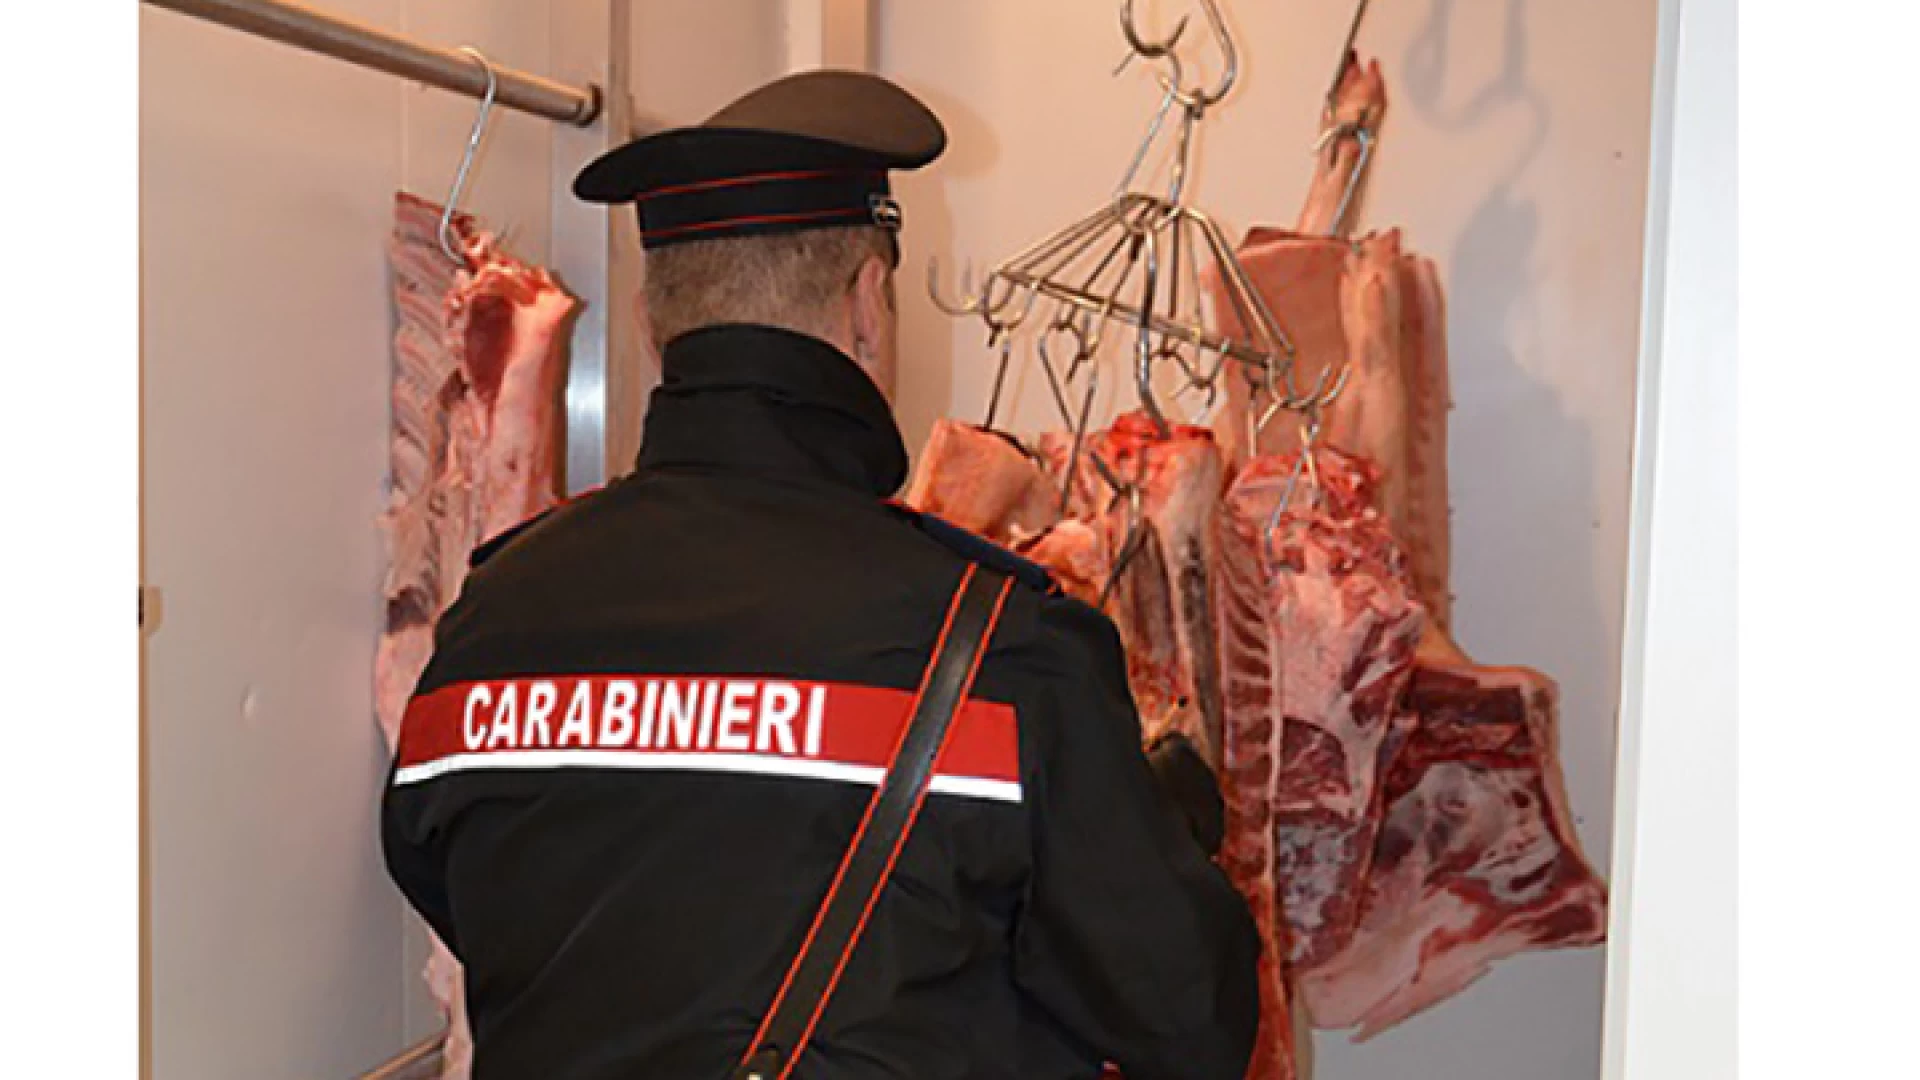 Isernia: Salute dei cittadini, scattano i controlli dei Carabinieri, sotto sequestro circa mezzo quintale di carne priva delle indicazioni sulla tracciabilità. Chiuso un deposito di alimenti per gravi carenze igienico-sanitarie.